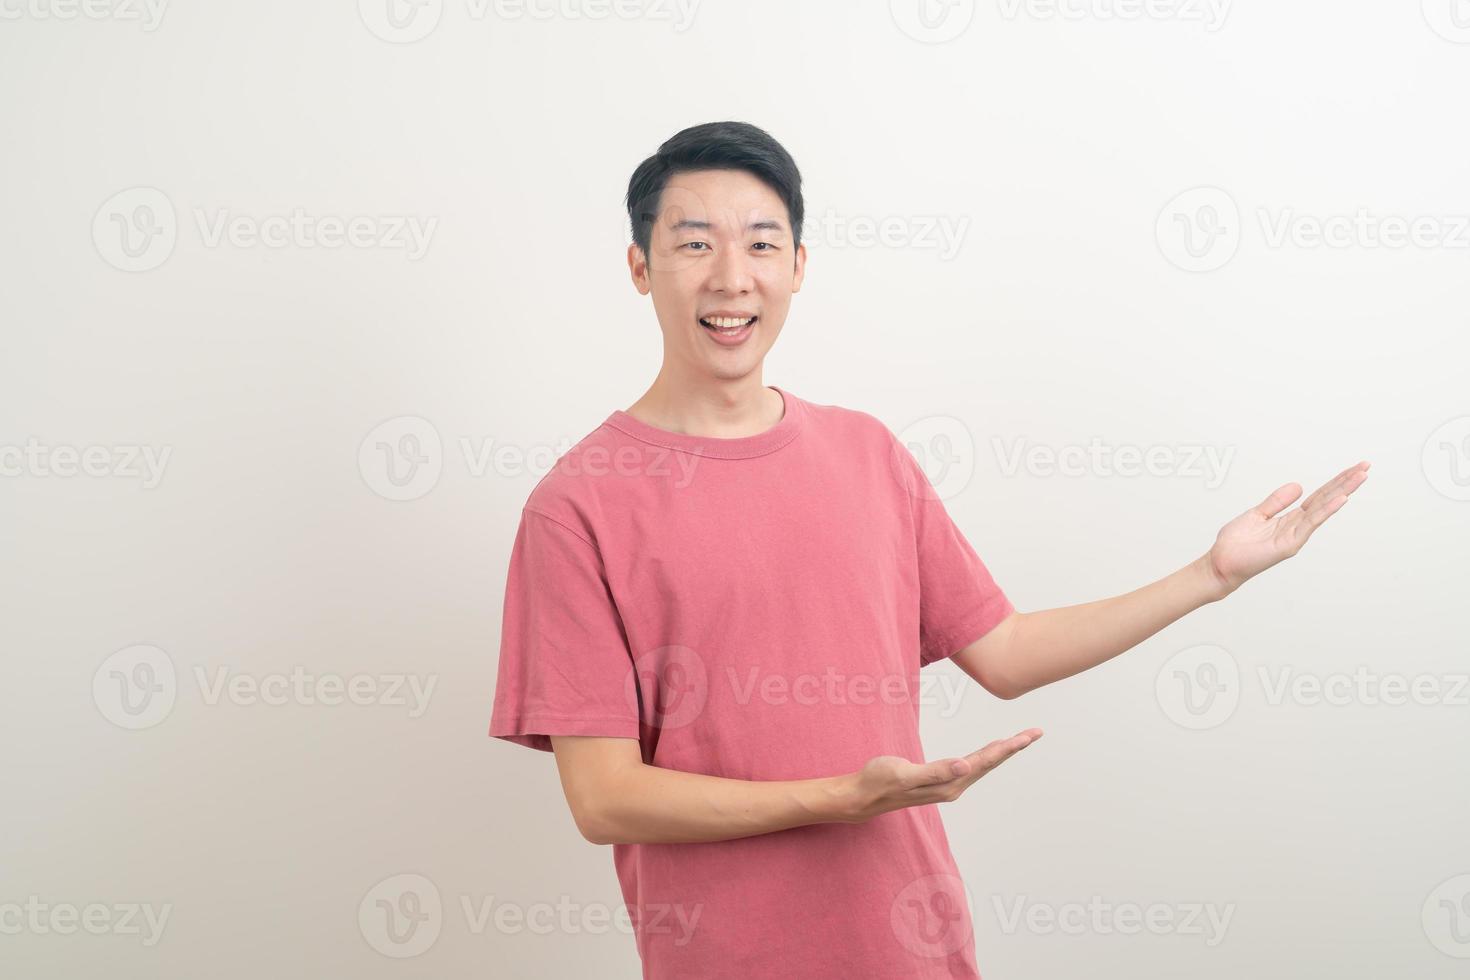 Hombre asiático con la mano apuntando o presentando sobre fondo blanco. foto